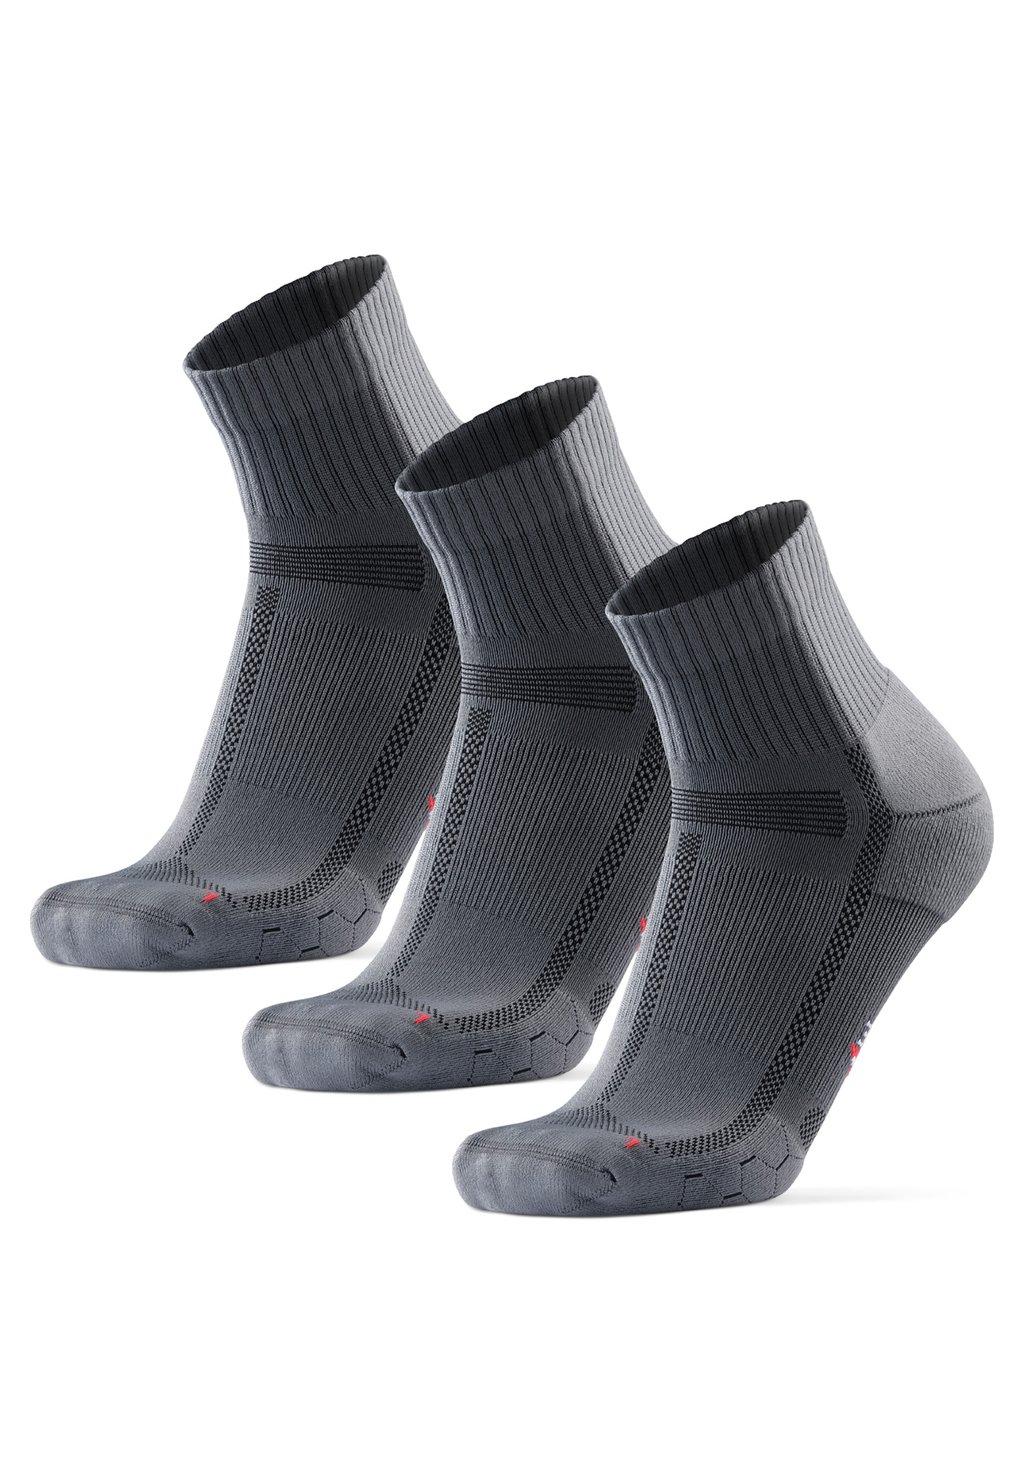 Спортивные носки Danish Endurance, серый/черный спортивные носки danish endurance черный